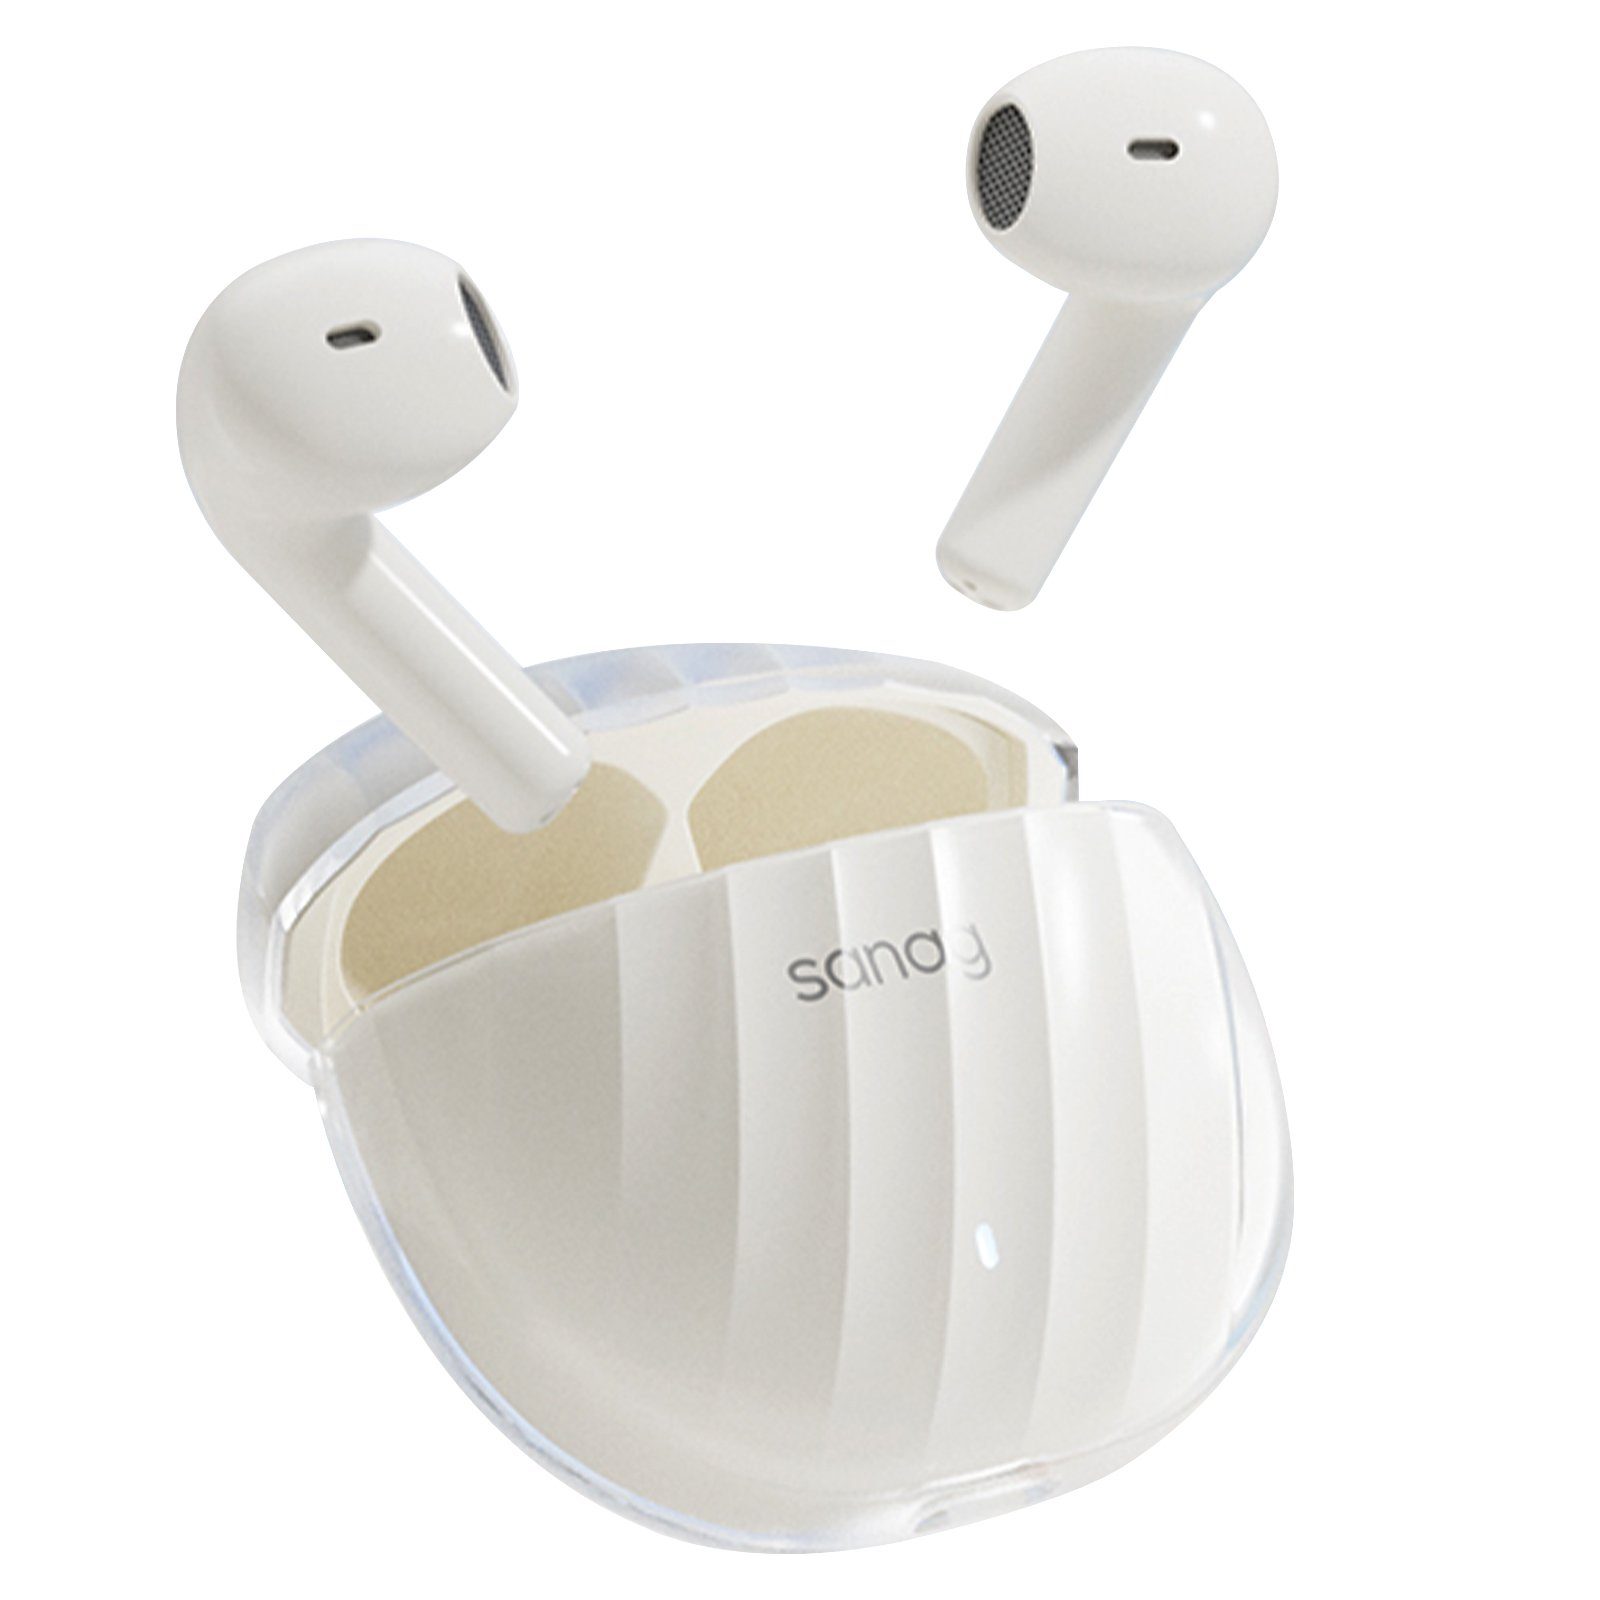 Yuede Bluetooth Kopfhörer Version 5.3, HD-Mikrofon Headphones, 28H Wireless In-Ear-Kopfhörer (ANC-Geräuschunterdrückung, Wasserdicht Nach IPX7, Surround Dolby Atmos) Weiß